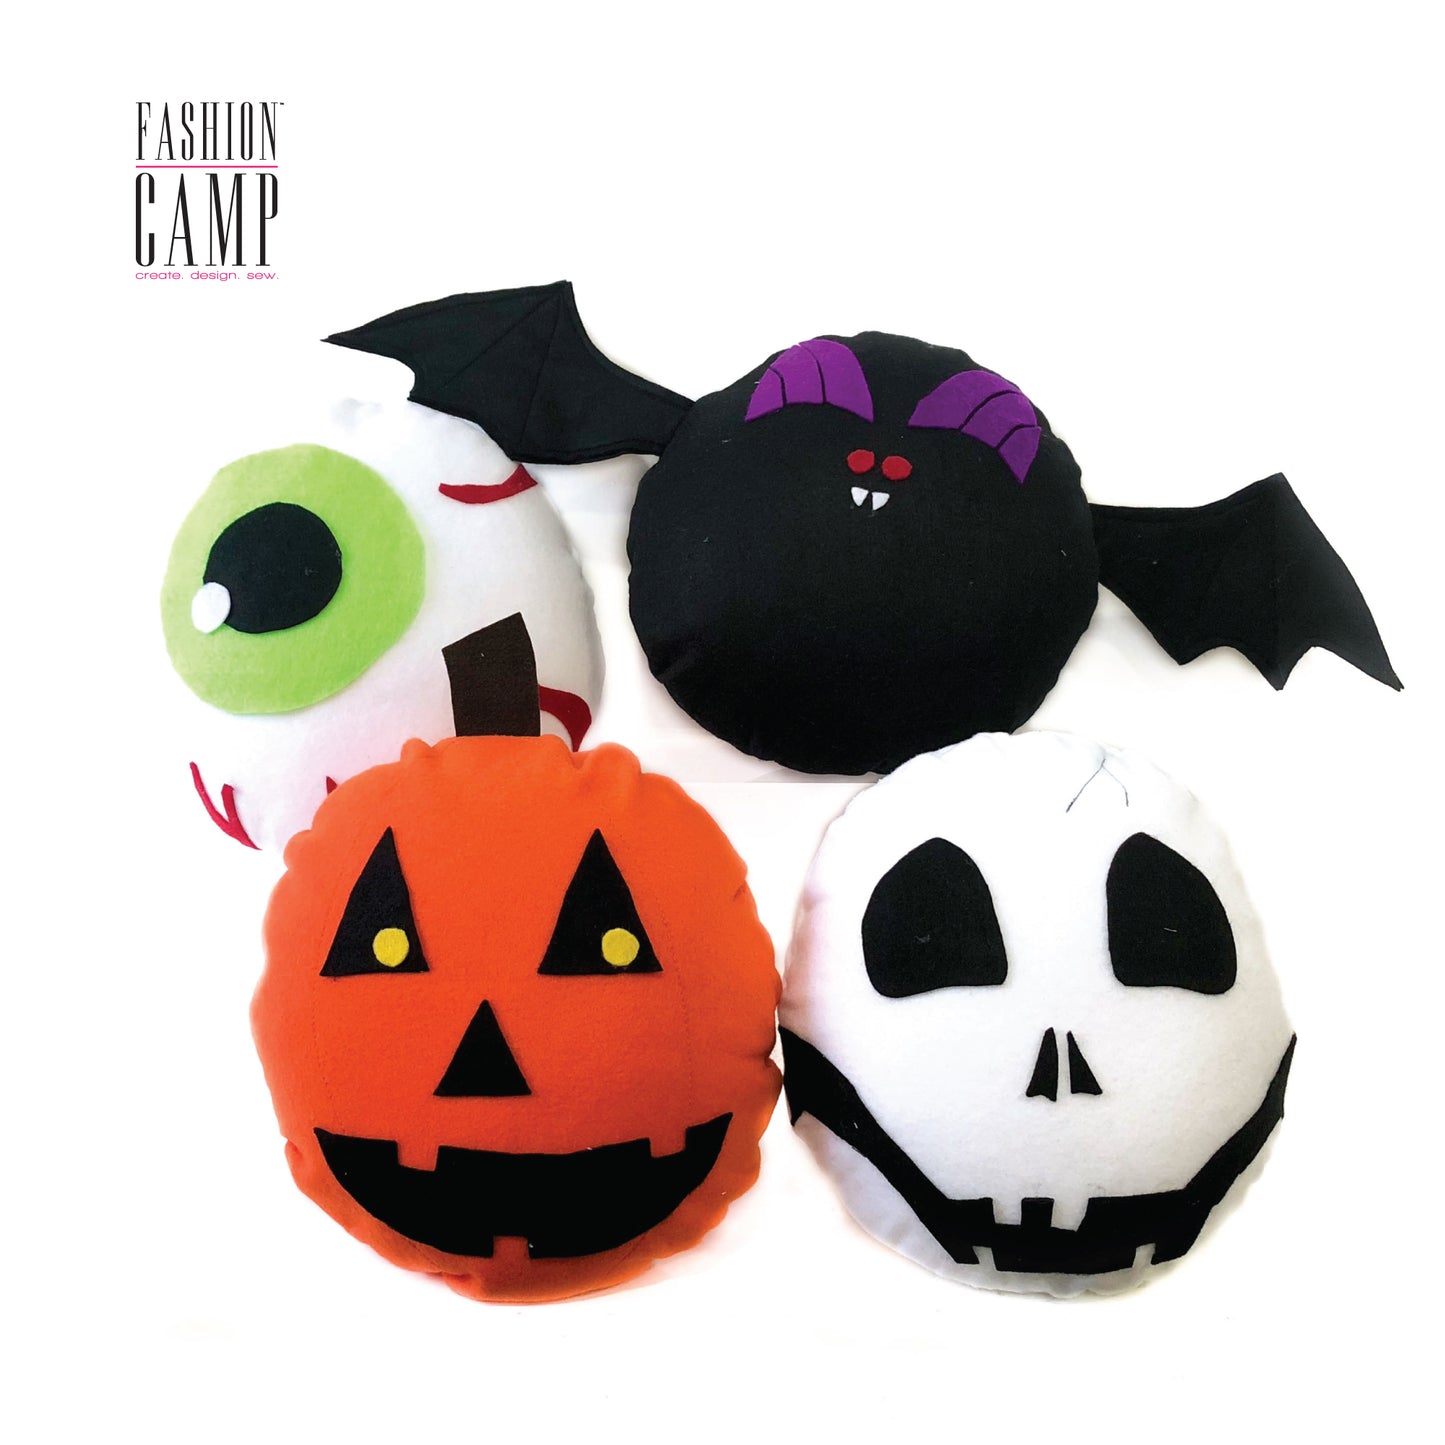 DIY Spooky Pillow Kits | Eyeball | Bat | Pumpkin | Skull | Felt 12" Round Pillow - Kids Sewing Project